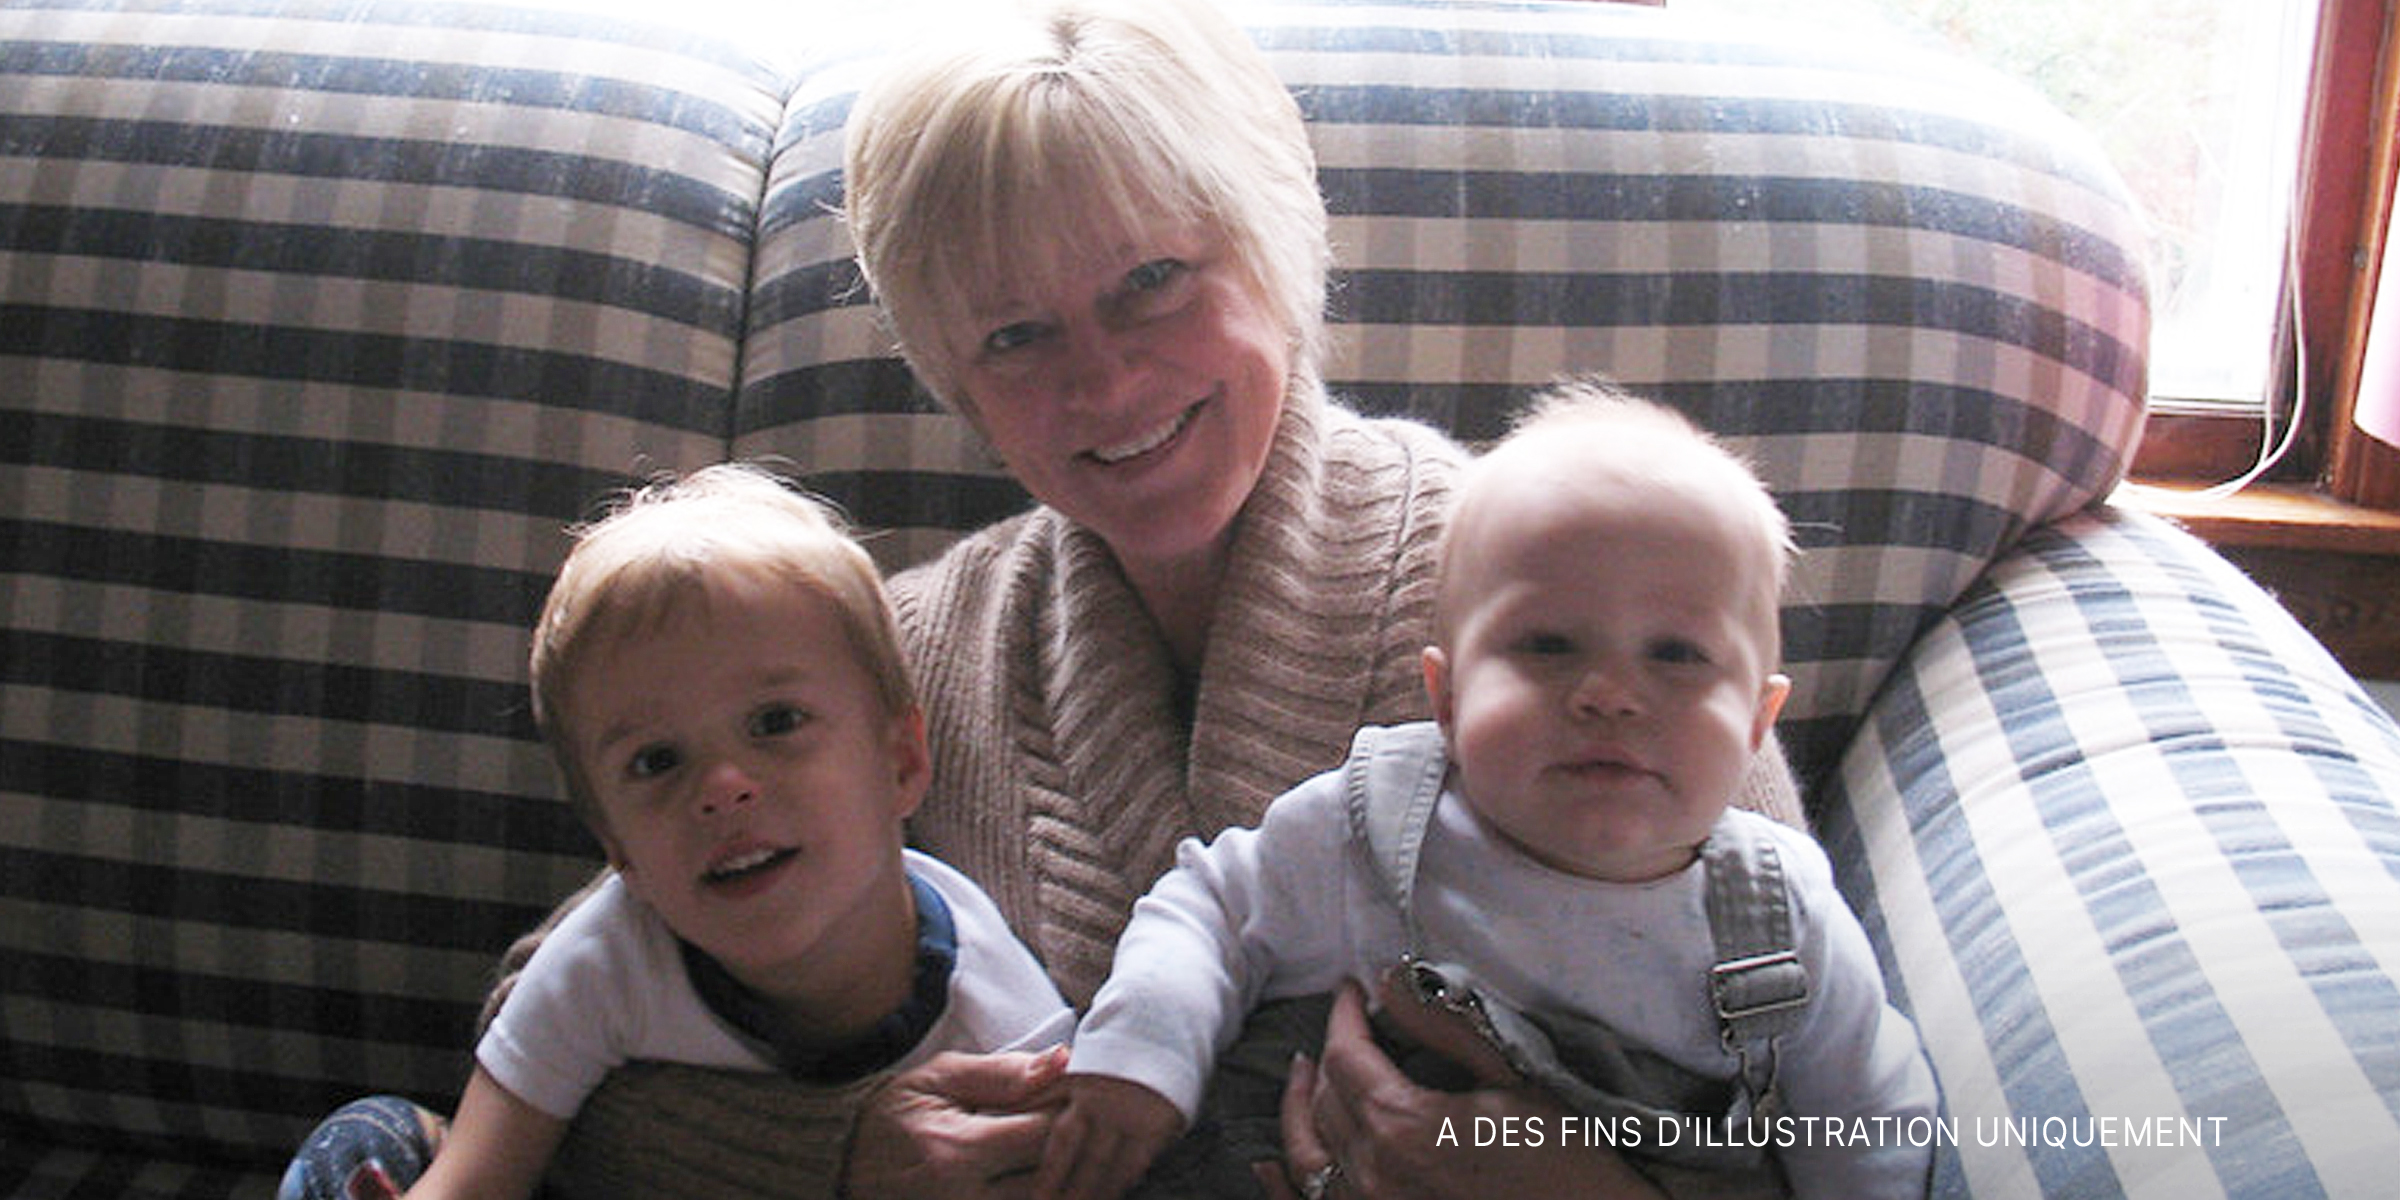 Une grand-mère avec ses deux petits-fils | Source : Flickr.com/(CC BY-SA 2.0) by xordroyd